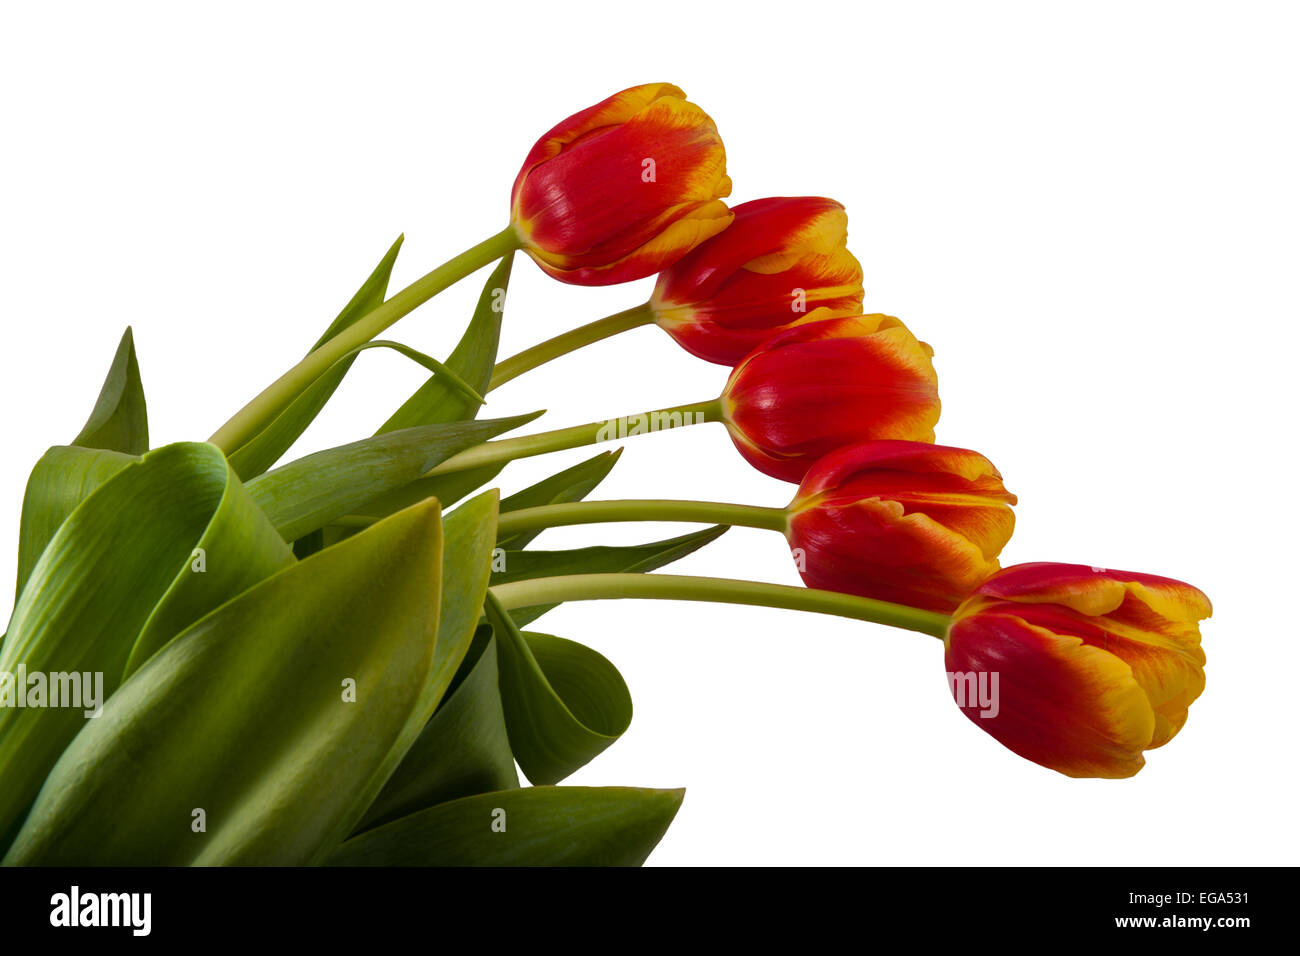 Cinque i tulipani con foglie verdi giacciono su una superficie bianca Foto Stock